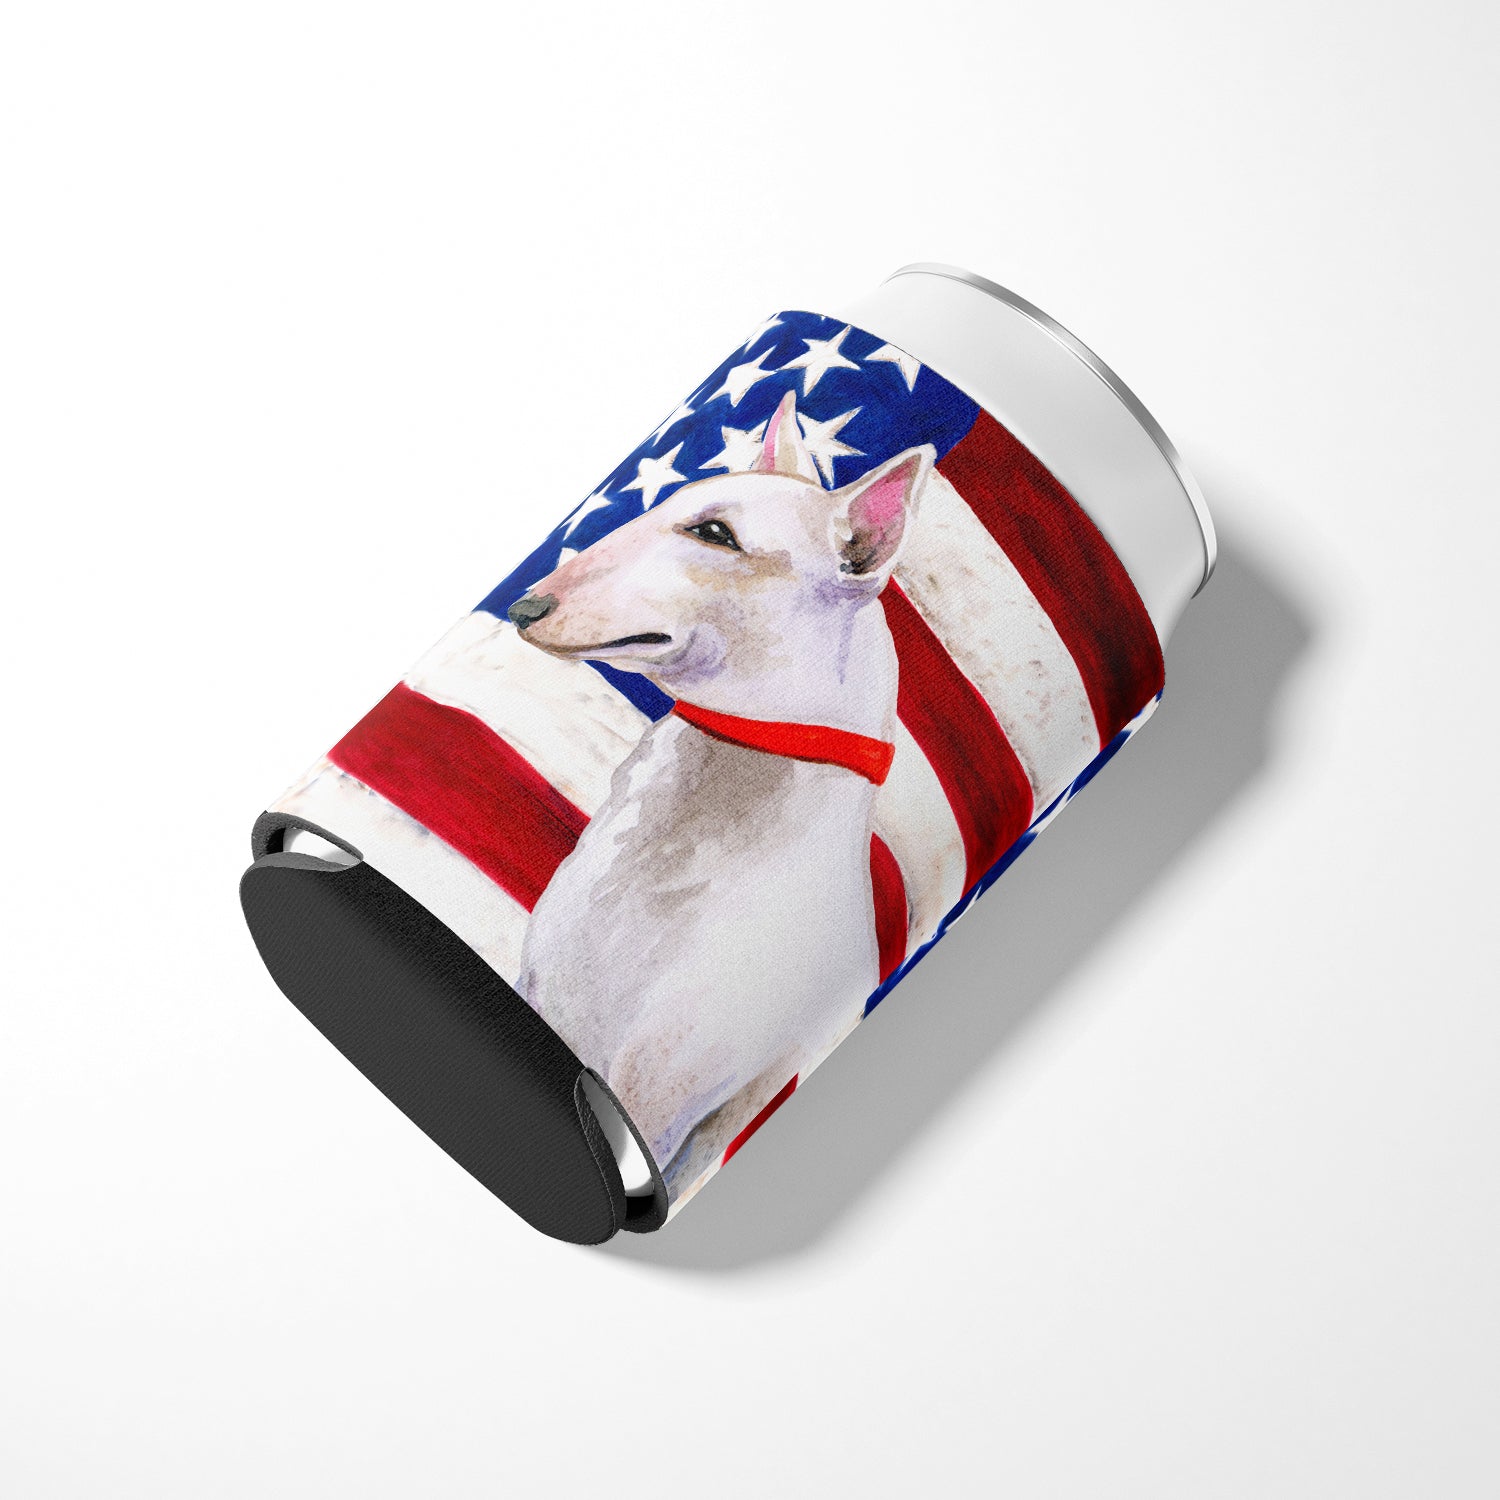 Bull Terrier Patriotic Can or Bottle Hugger BB9693CC